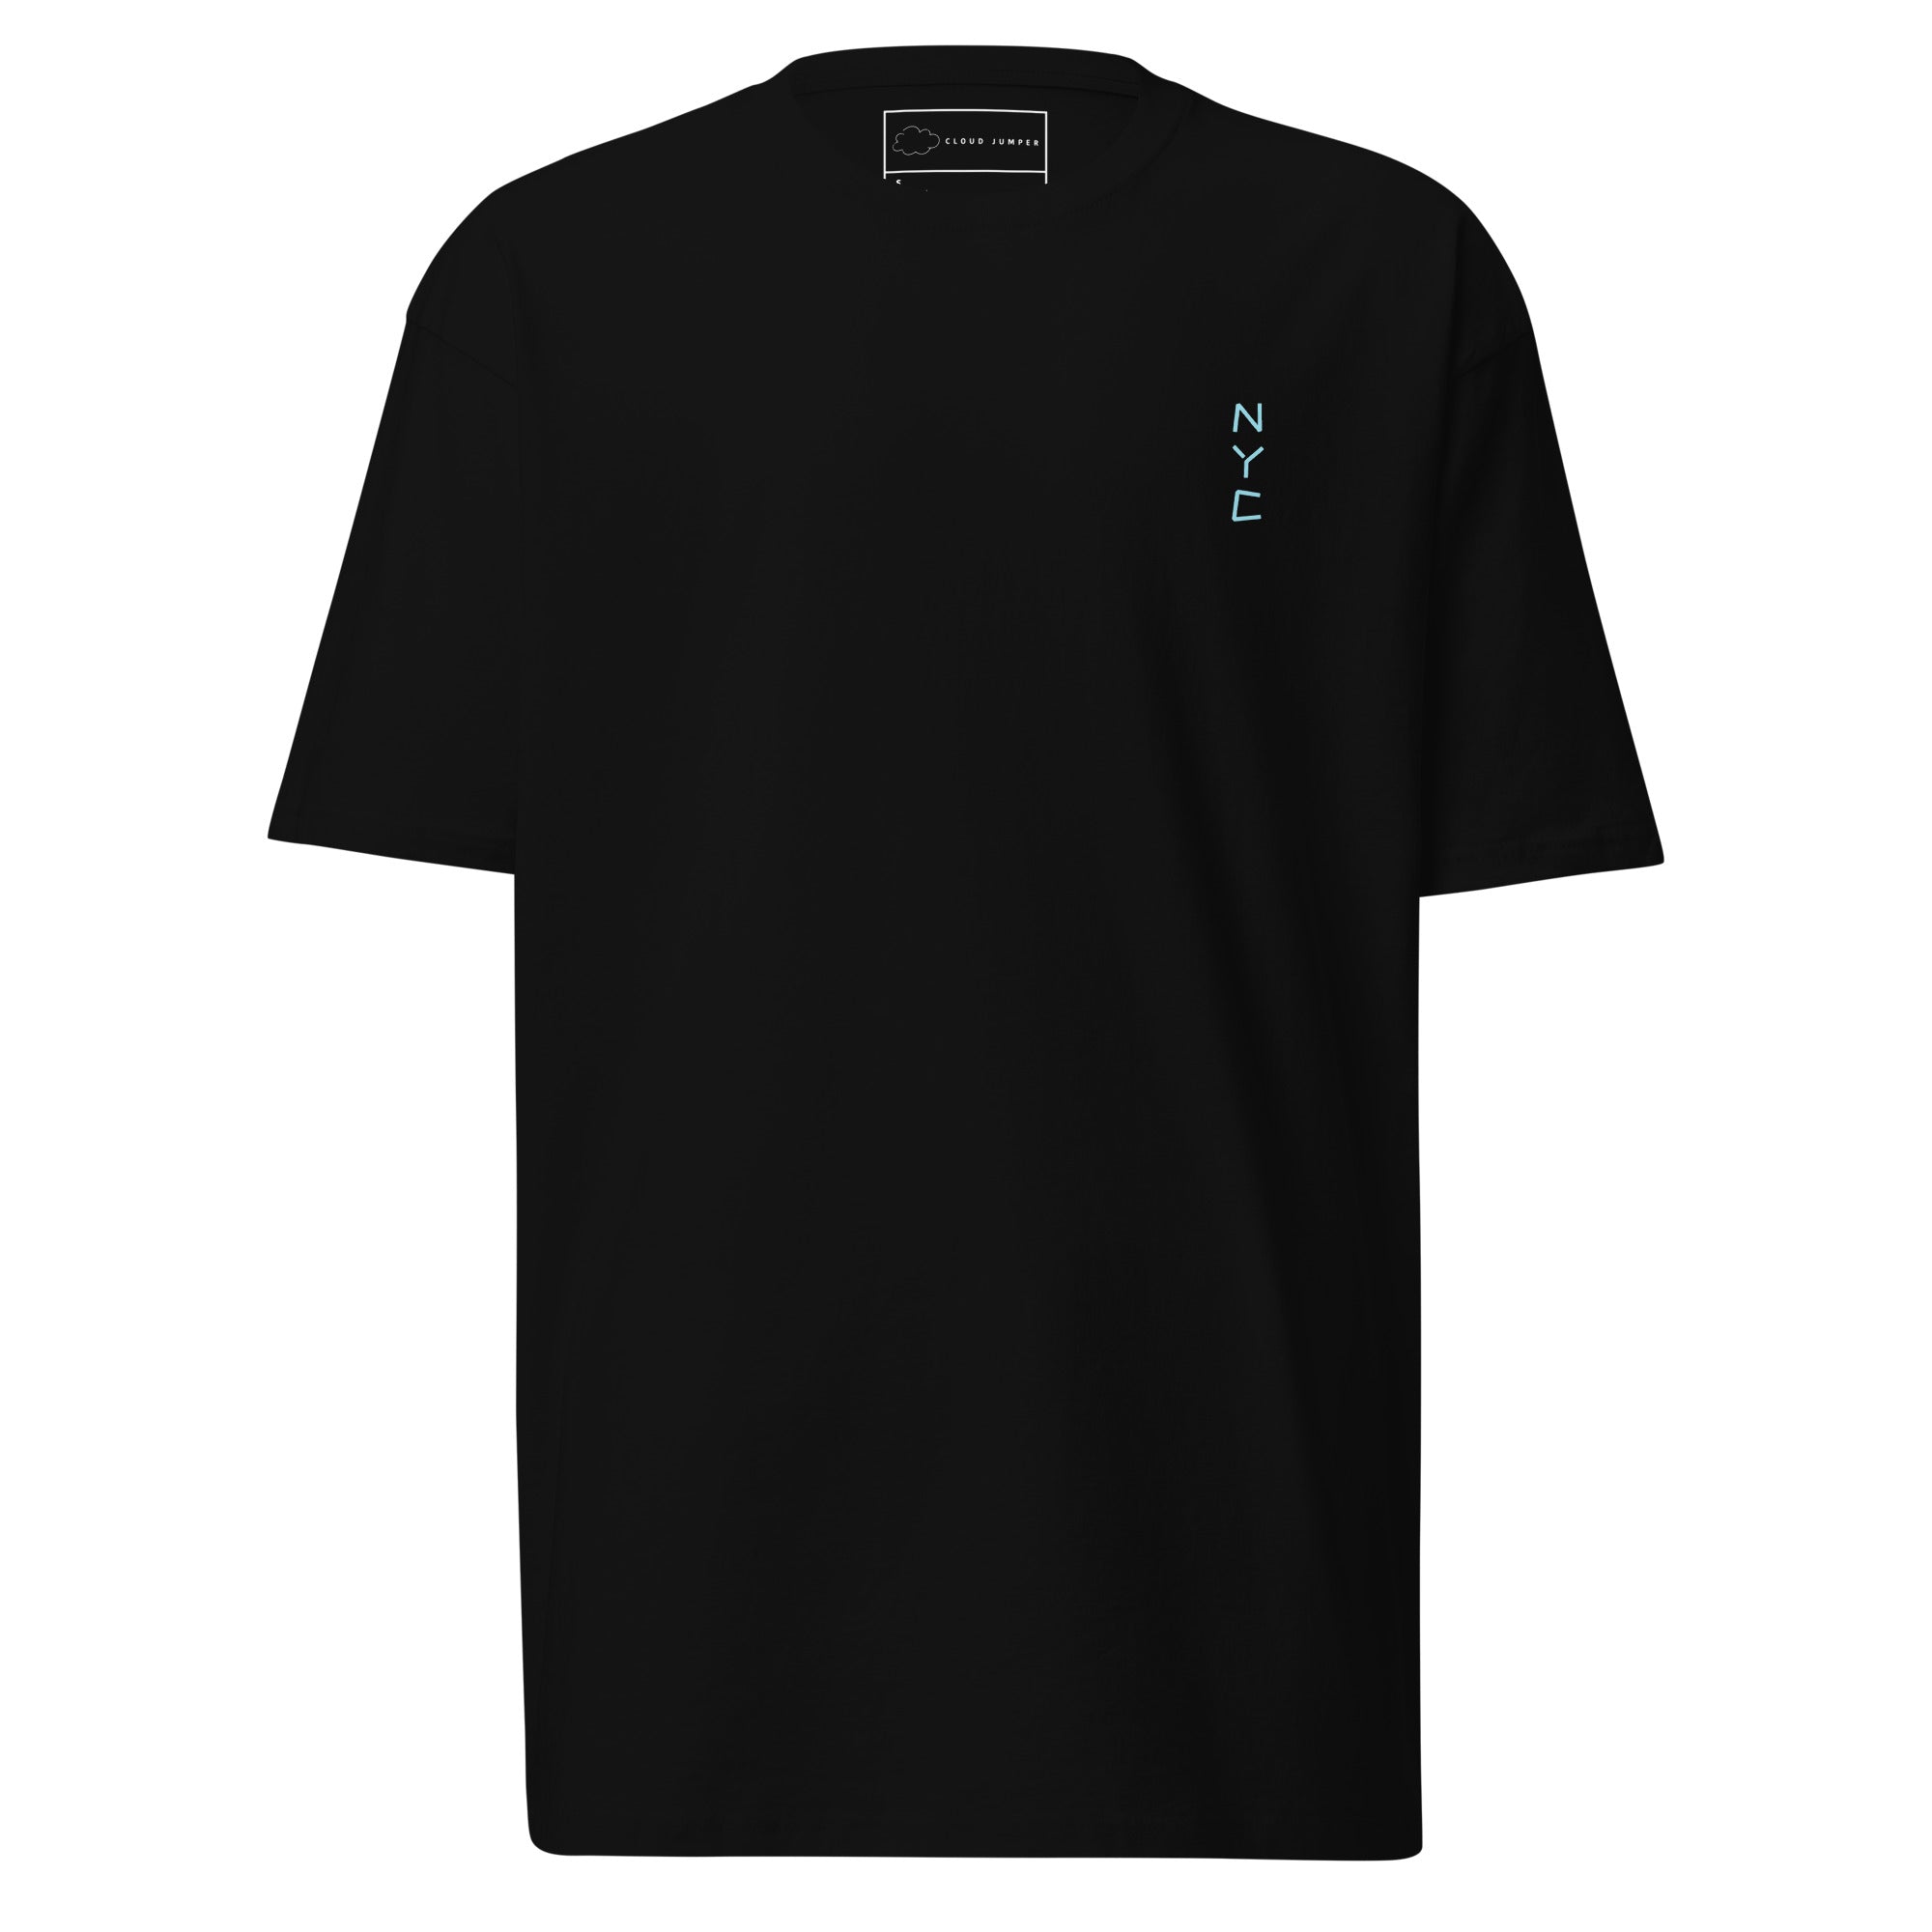 The LA T-shirt – Cloud Jumper